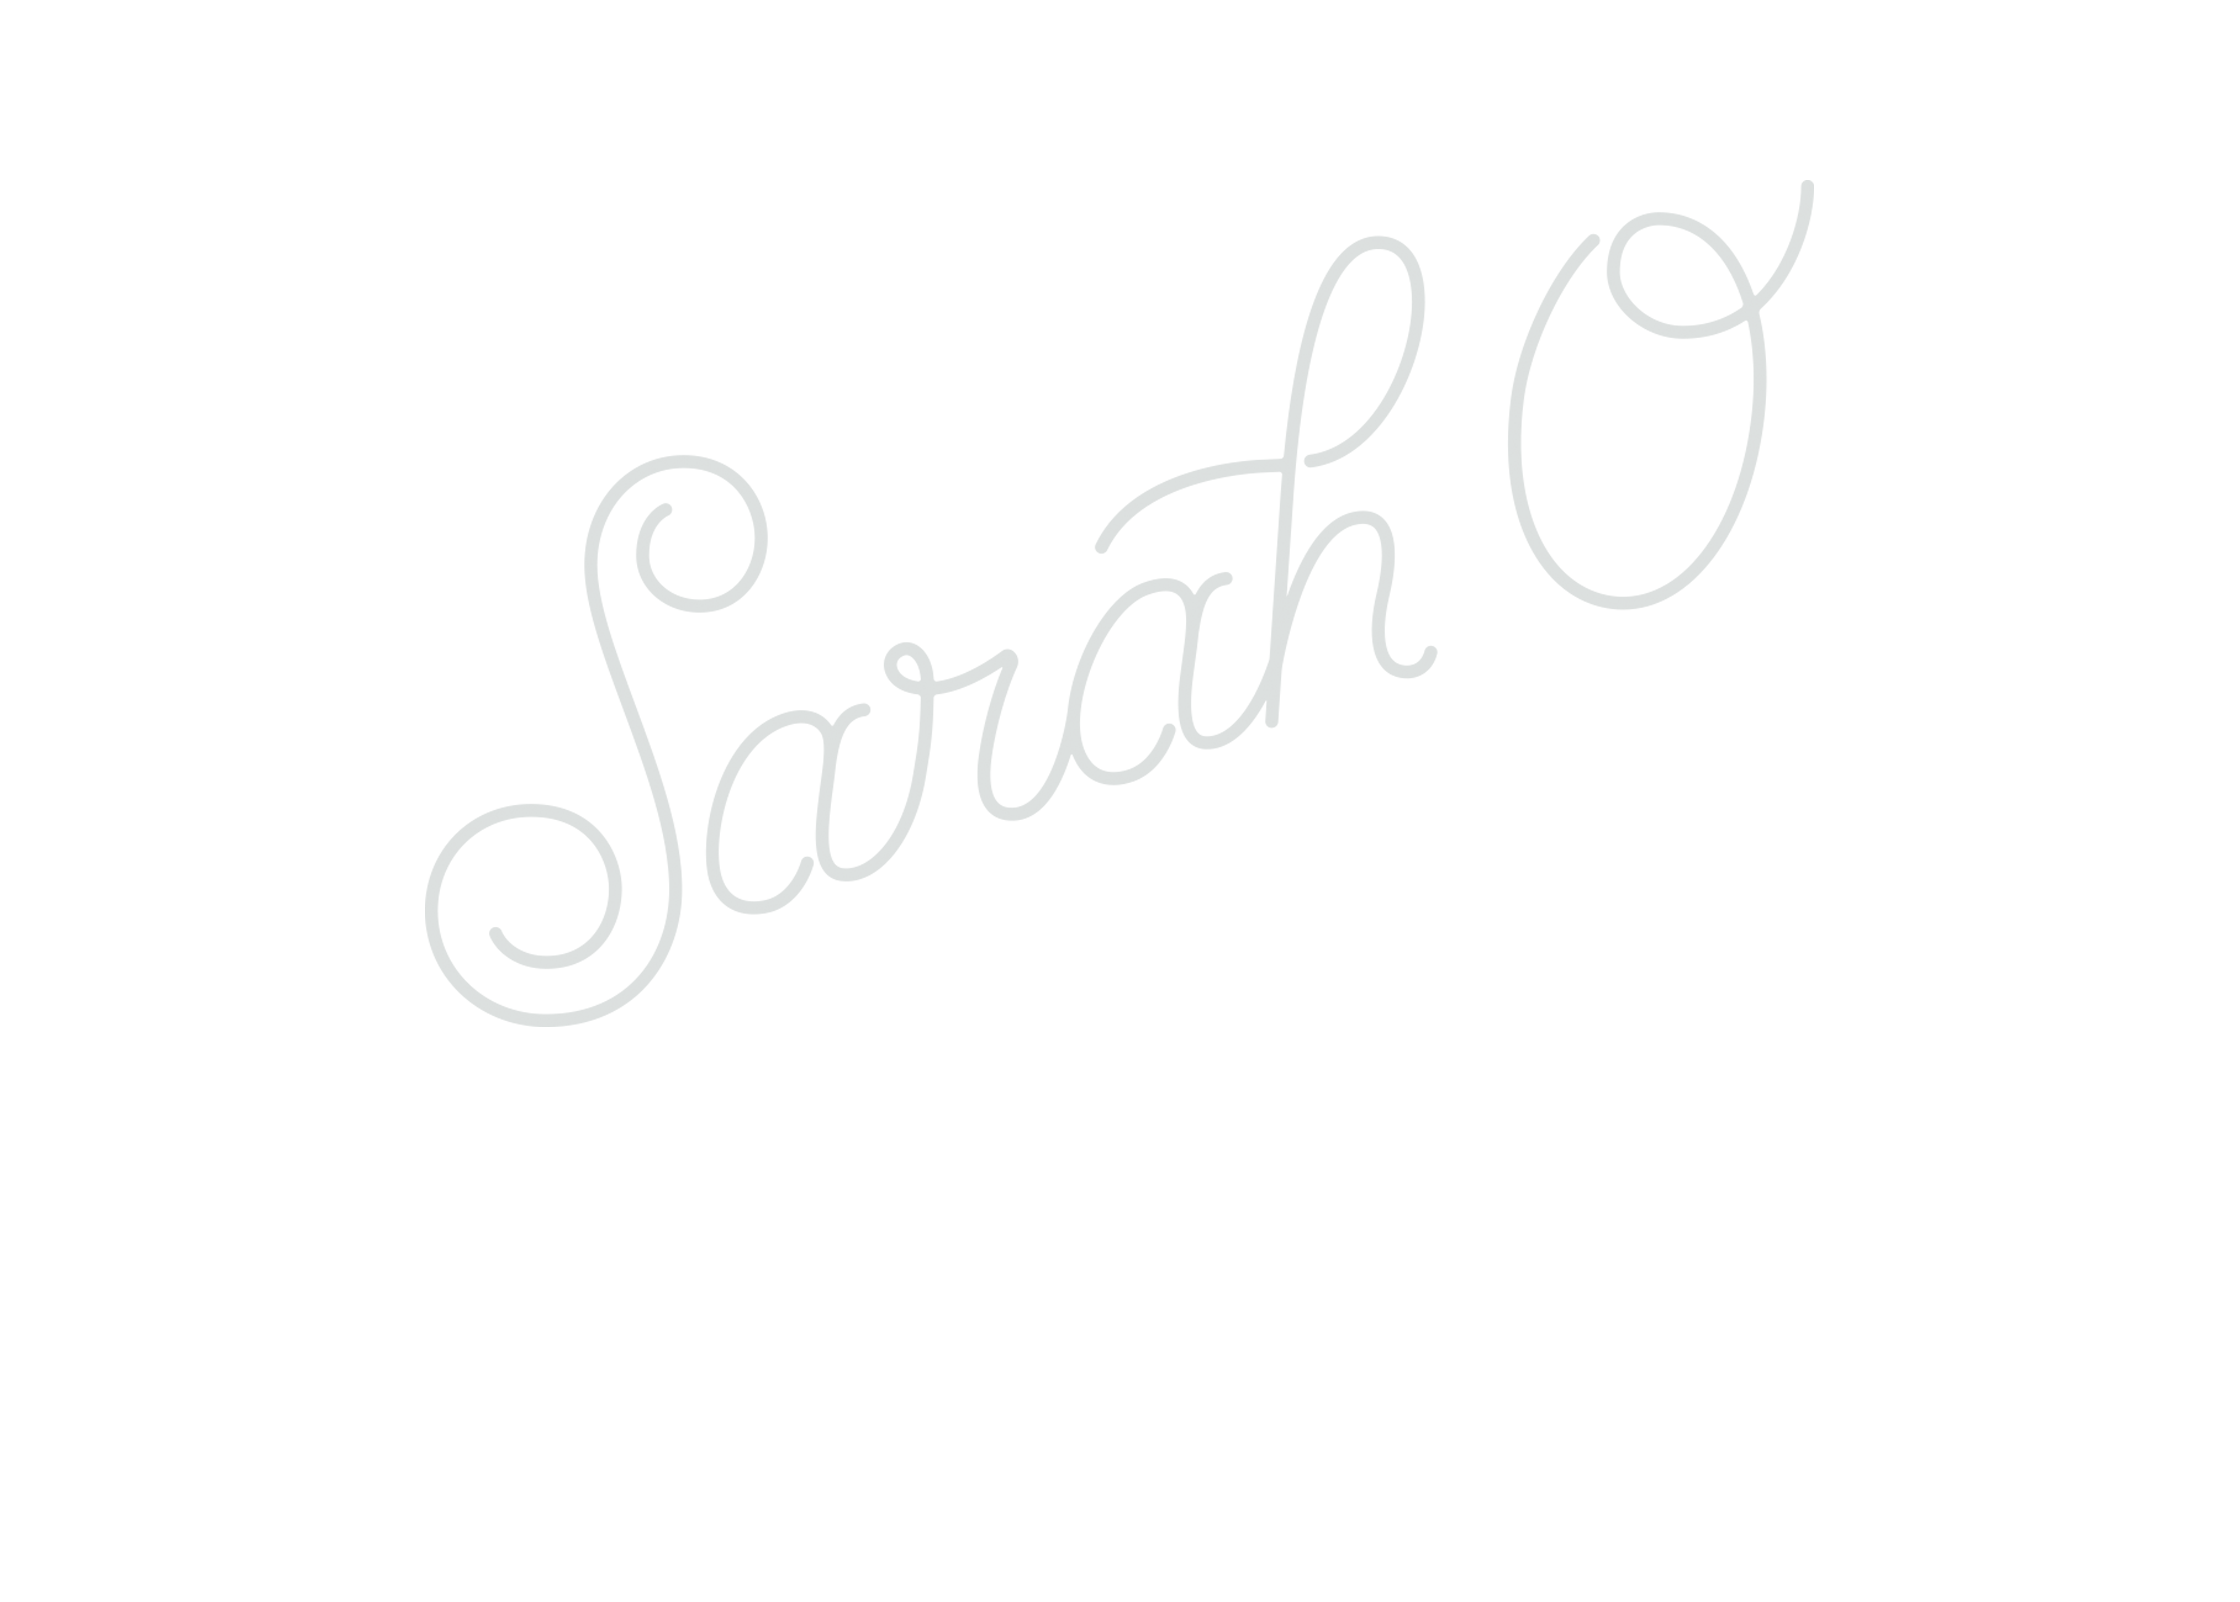 Sarah O.